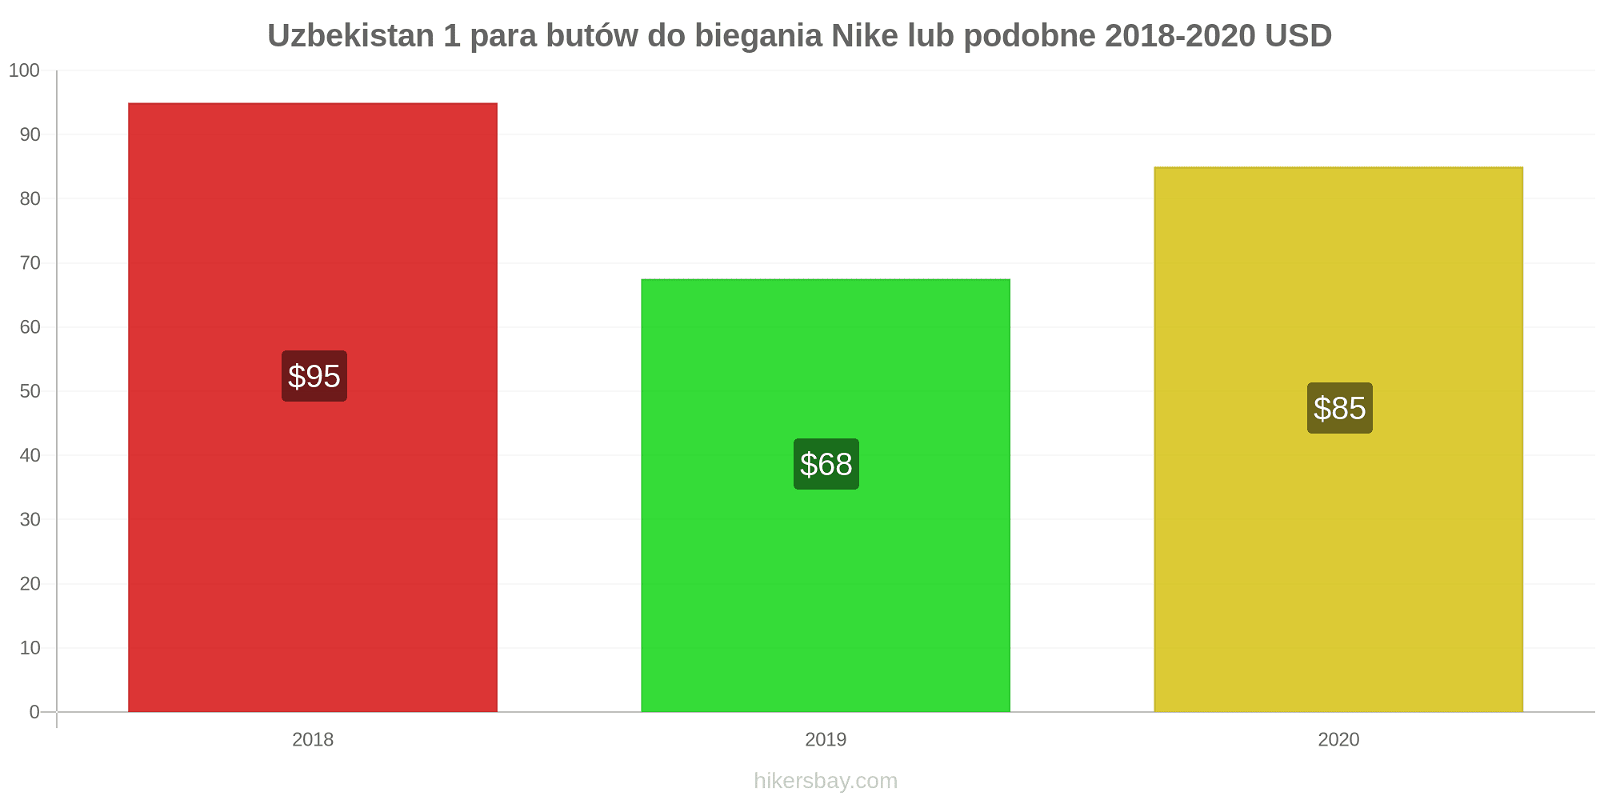 Uzbekistan zmiany cen 1 para butów do biegania Nike lub podobne hikersbay.com